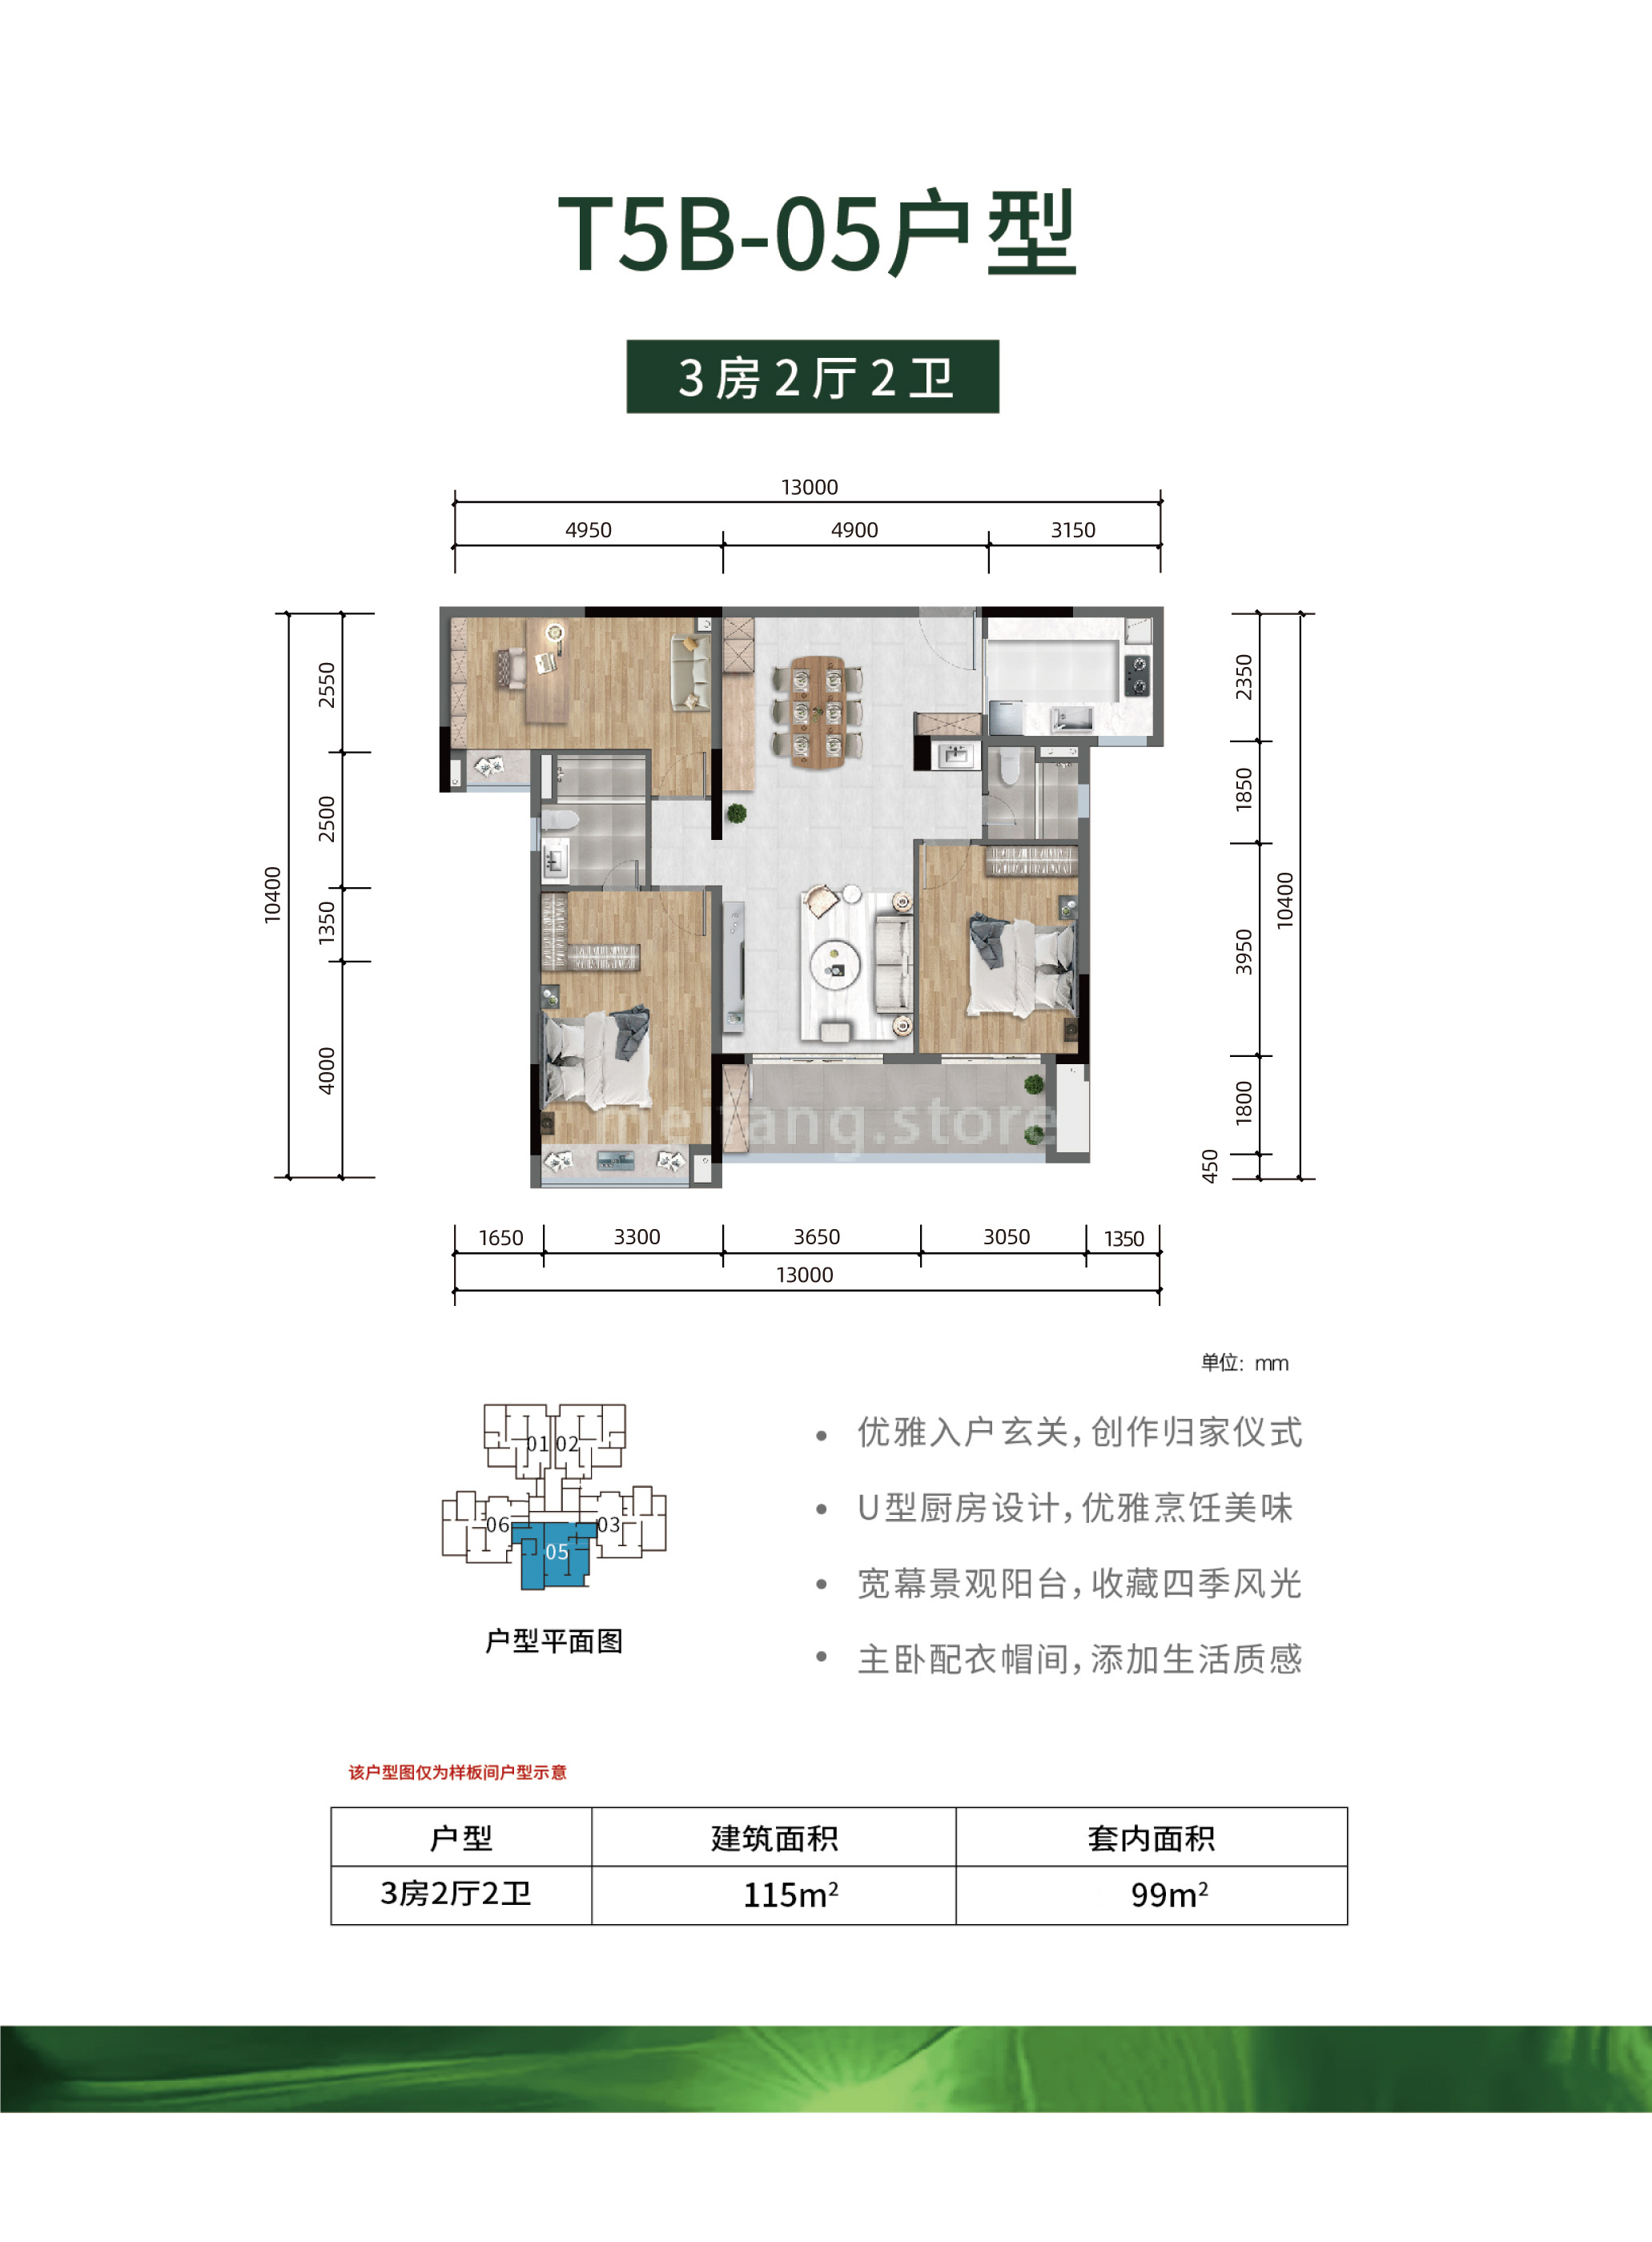 雅居乐清水湾清澜 洋房 T5B-05户型 3房2厅2卫 建筑面积 115m²